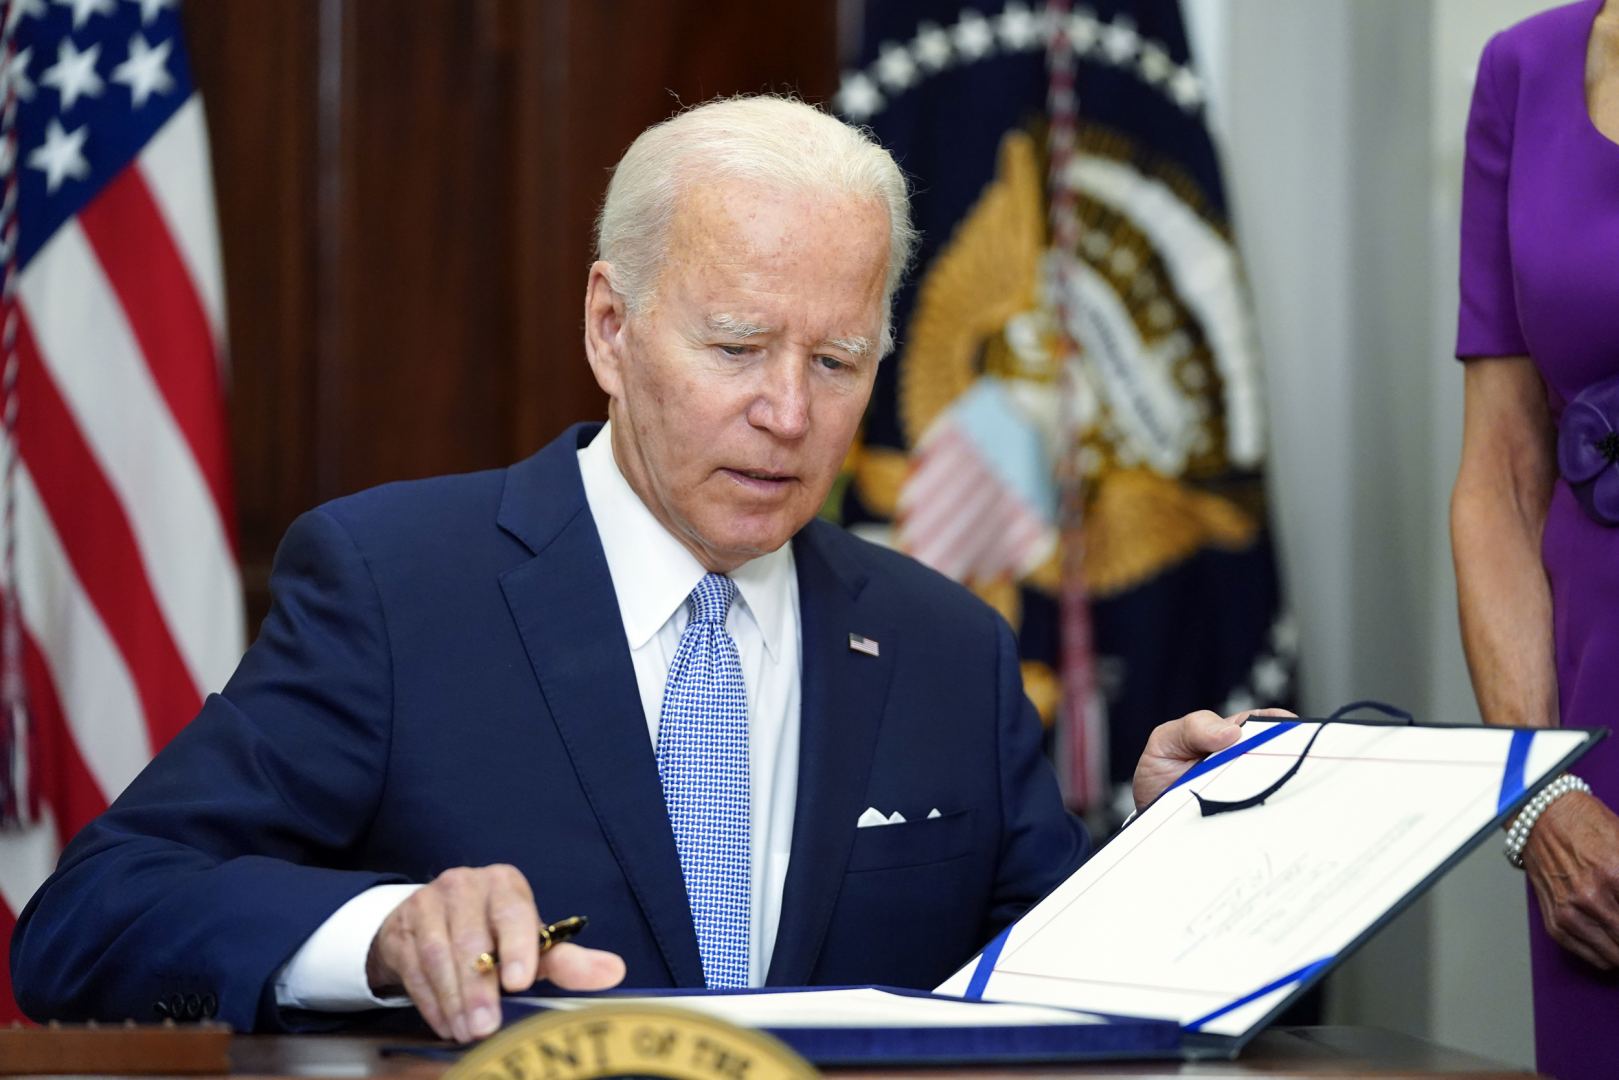 Biden signs gun safety bill into law